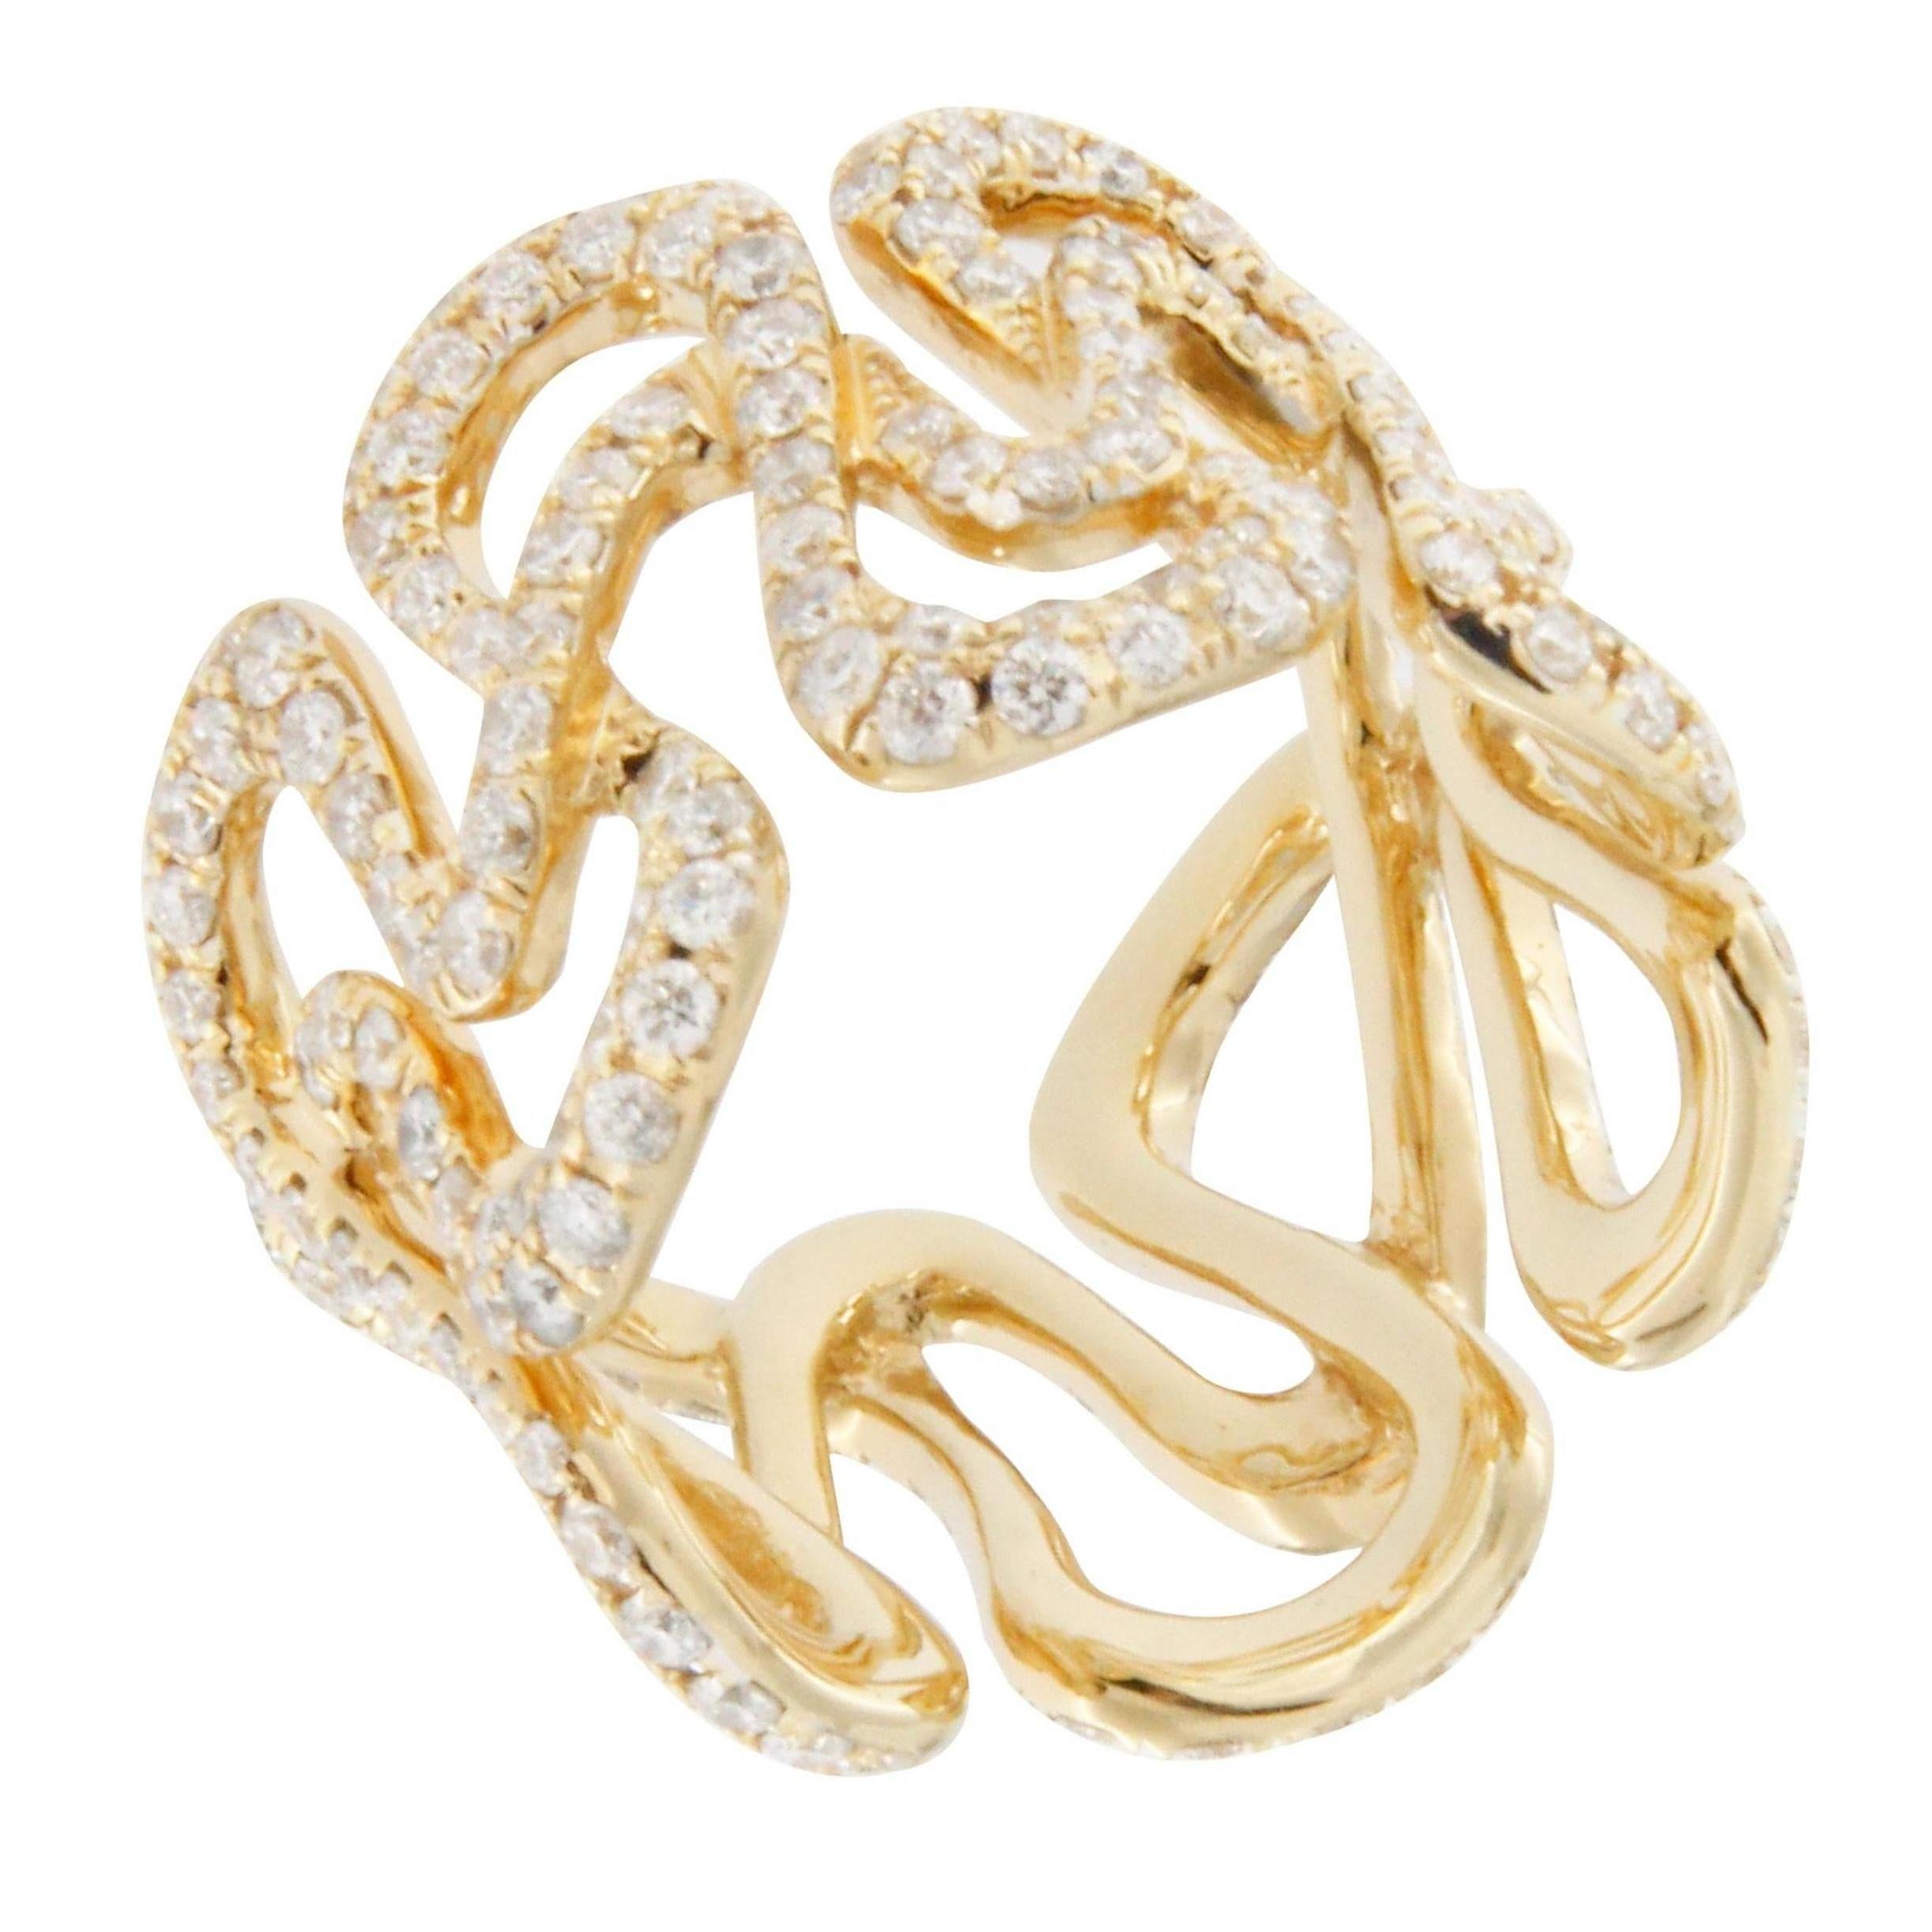 Jona White Diamond 18 karat Yellow Gold Swirl Band Ring 2